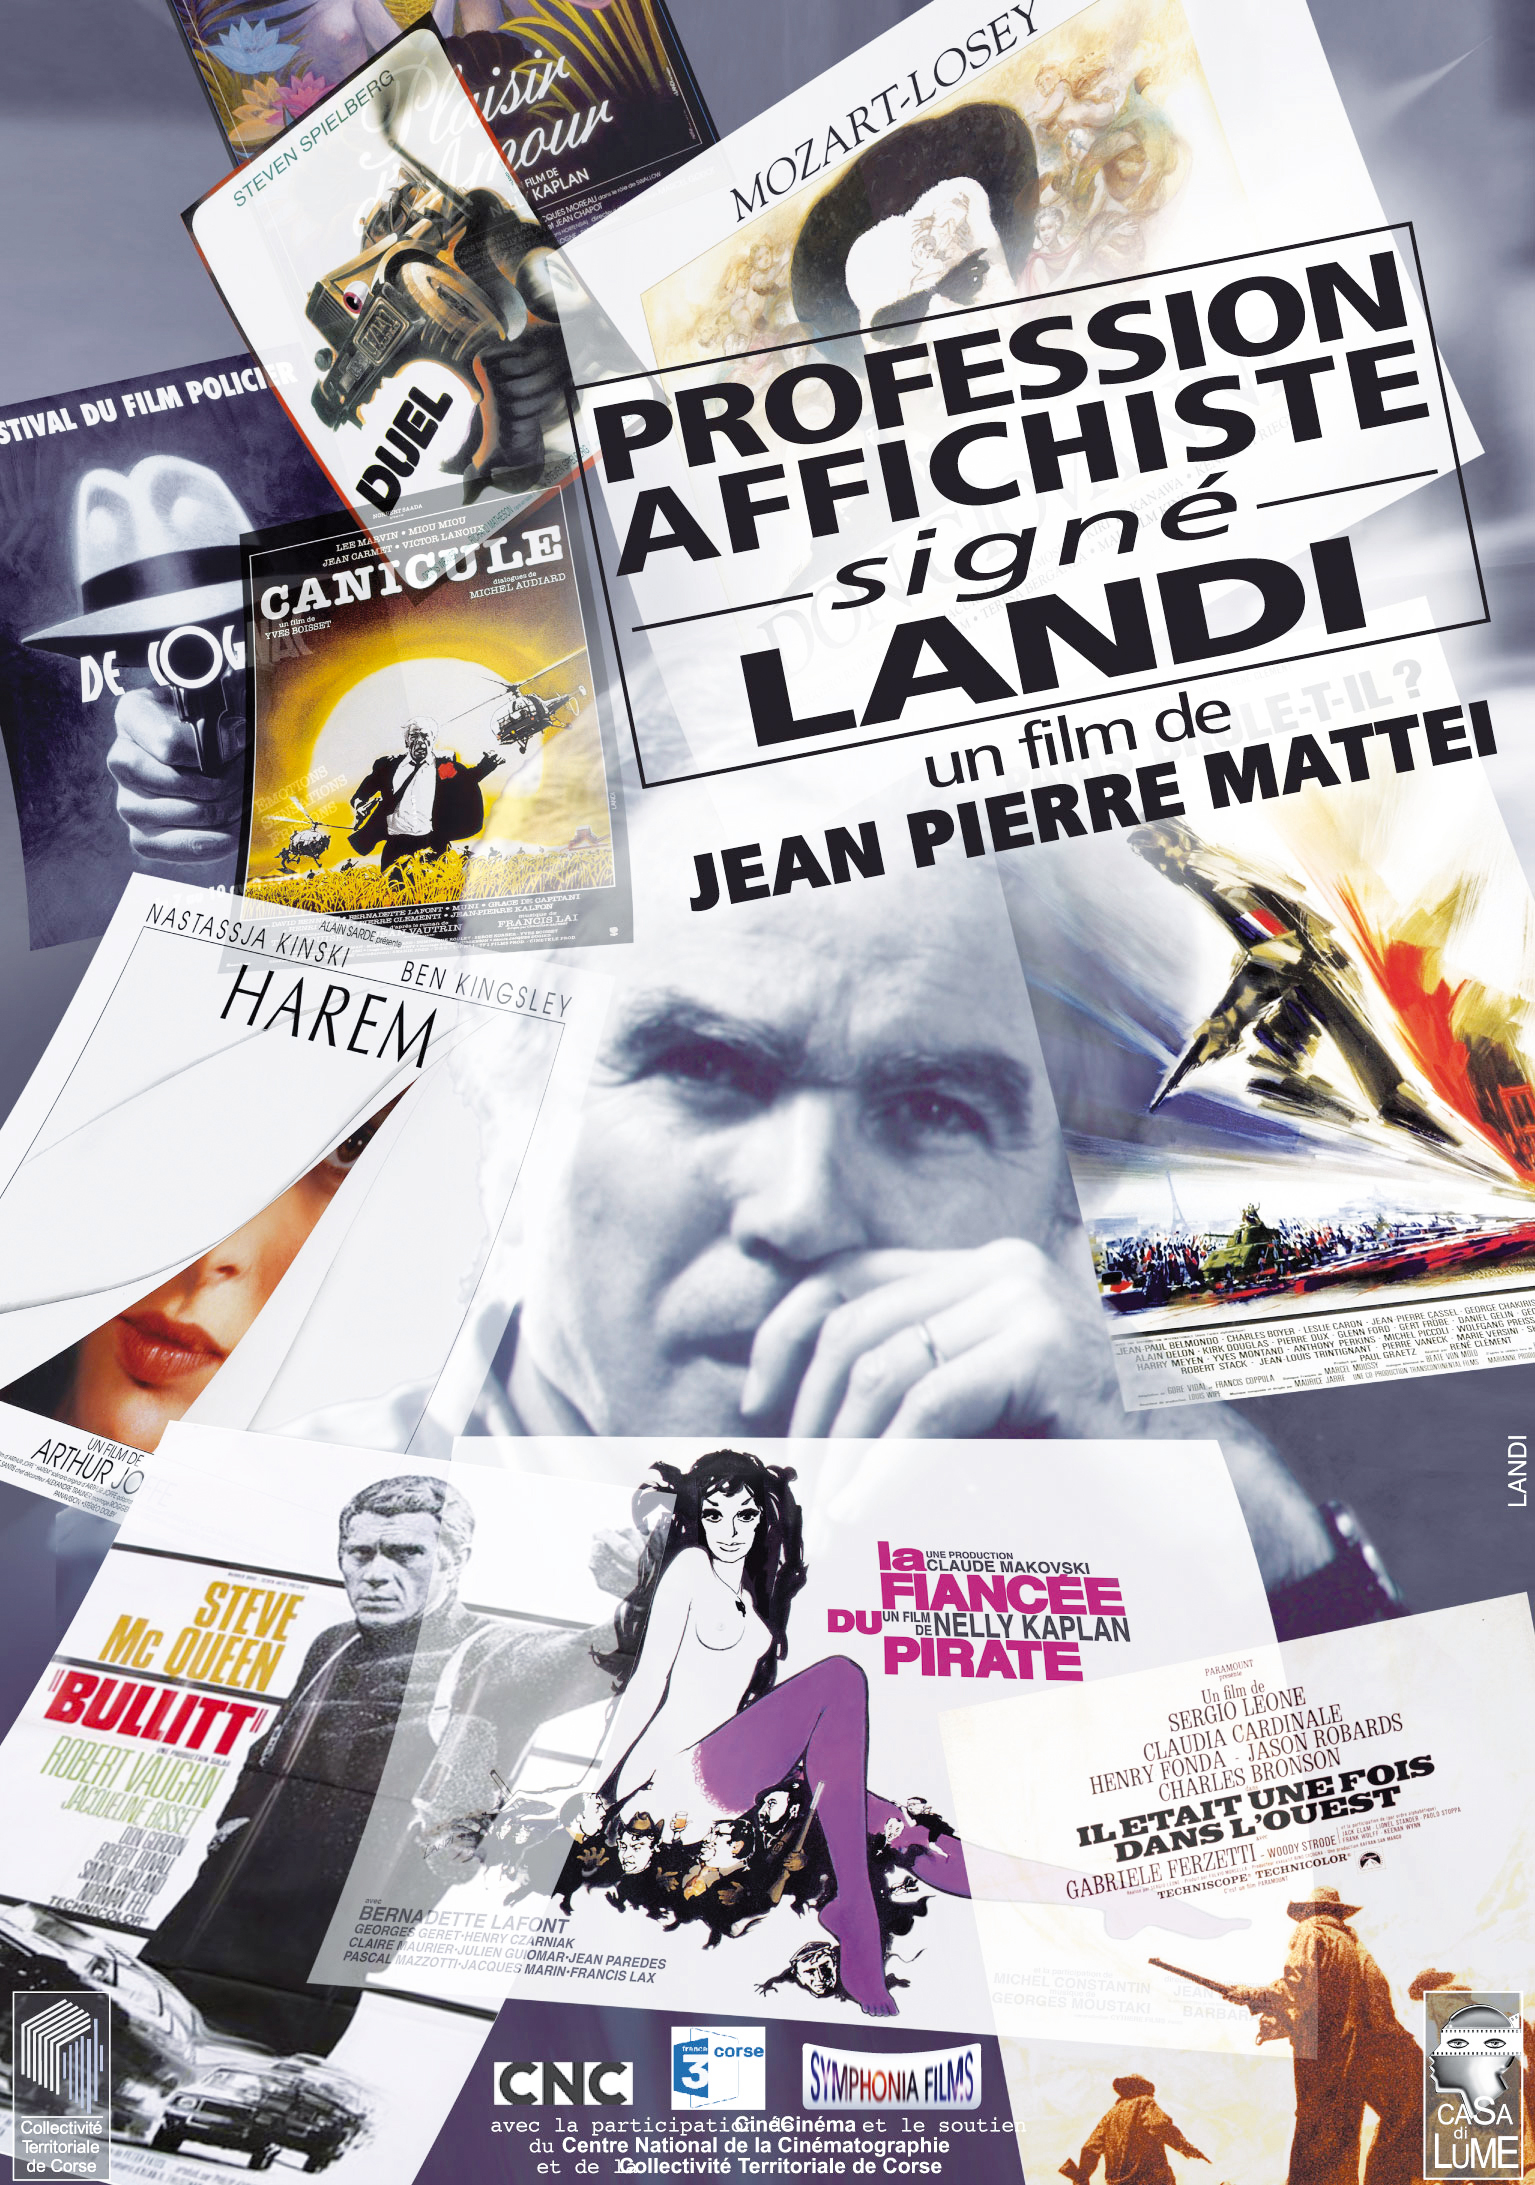 Projection du documentaire " Profession affichiste: signé Landi" de Jean-Pierre Mattei, le Dimanche 12 Août 2018 à 21h00 à Pantano.